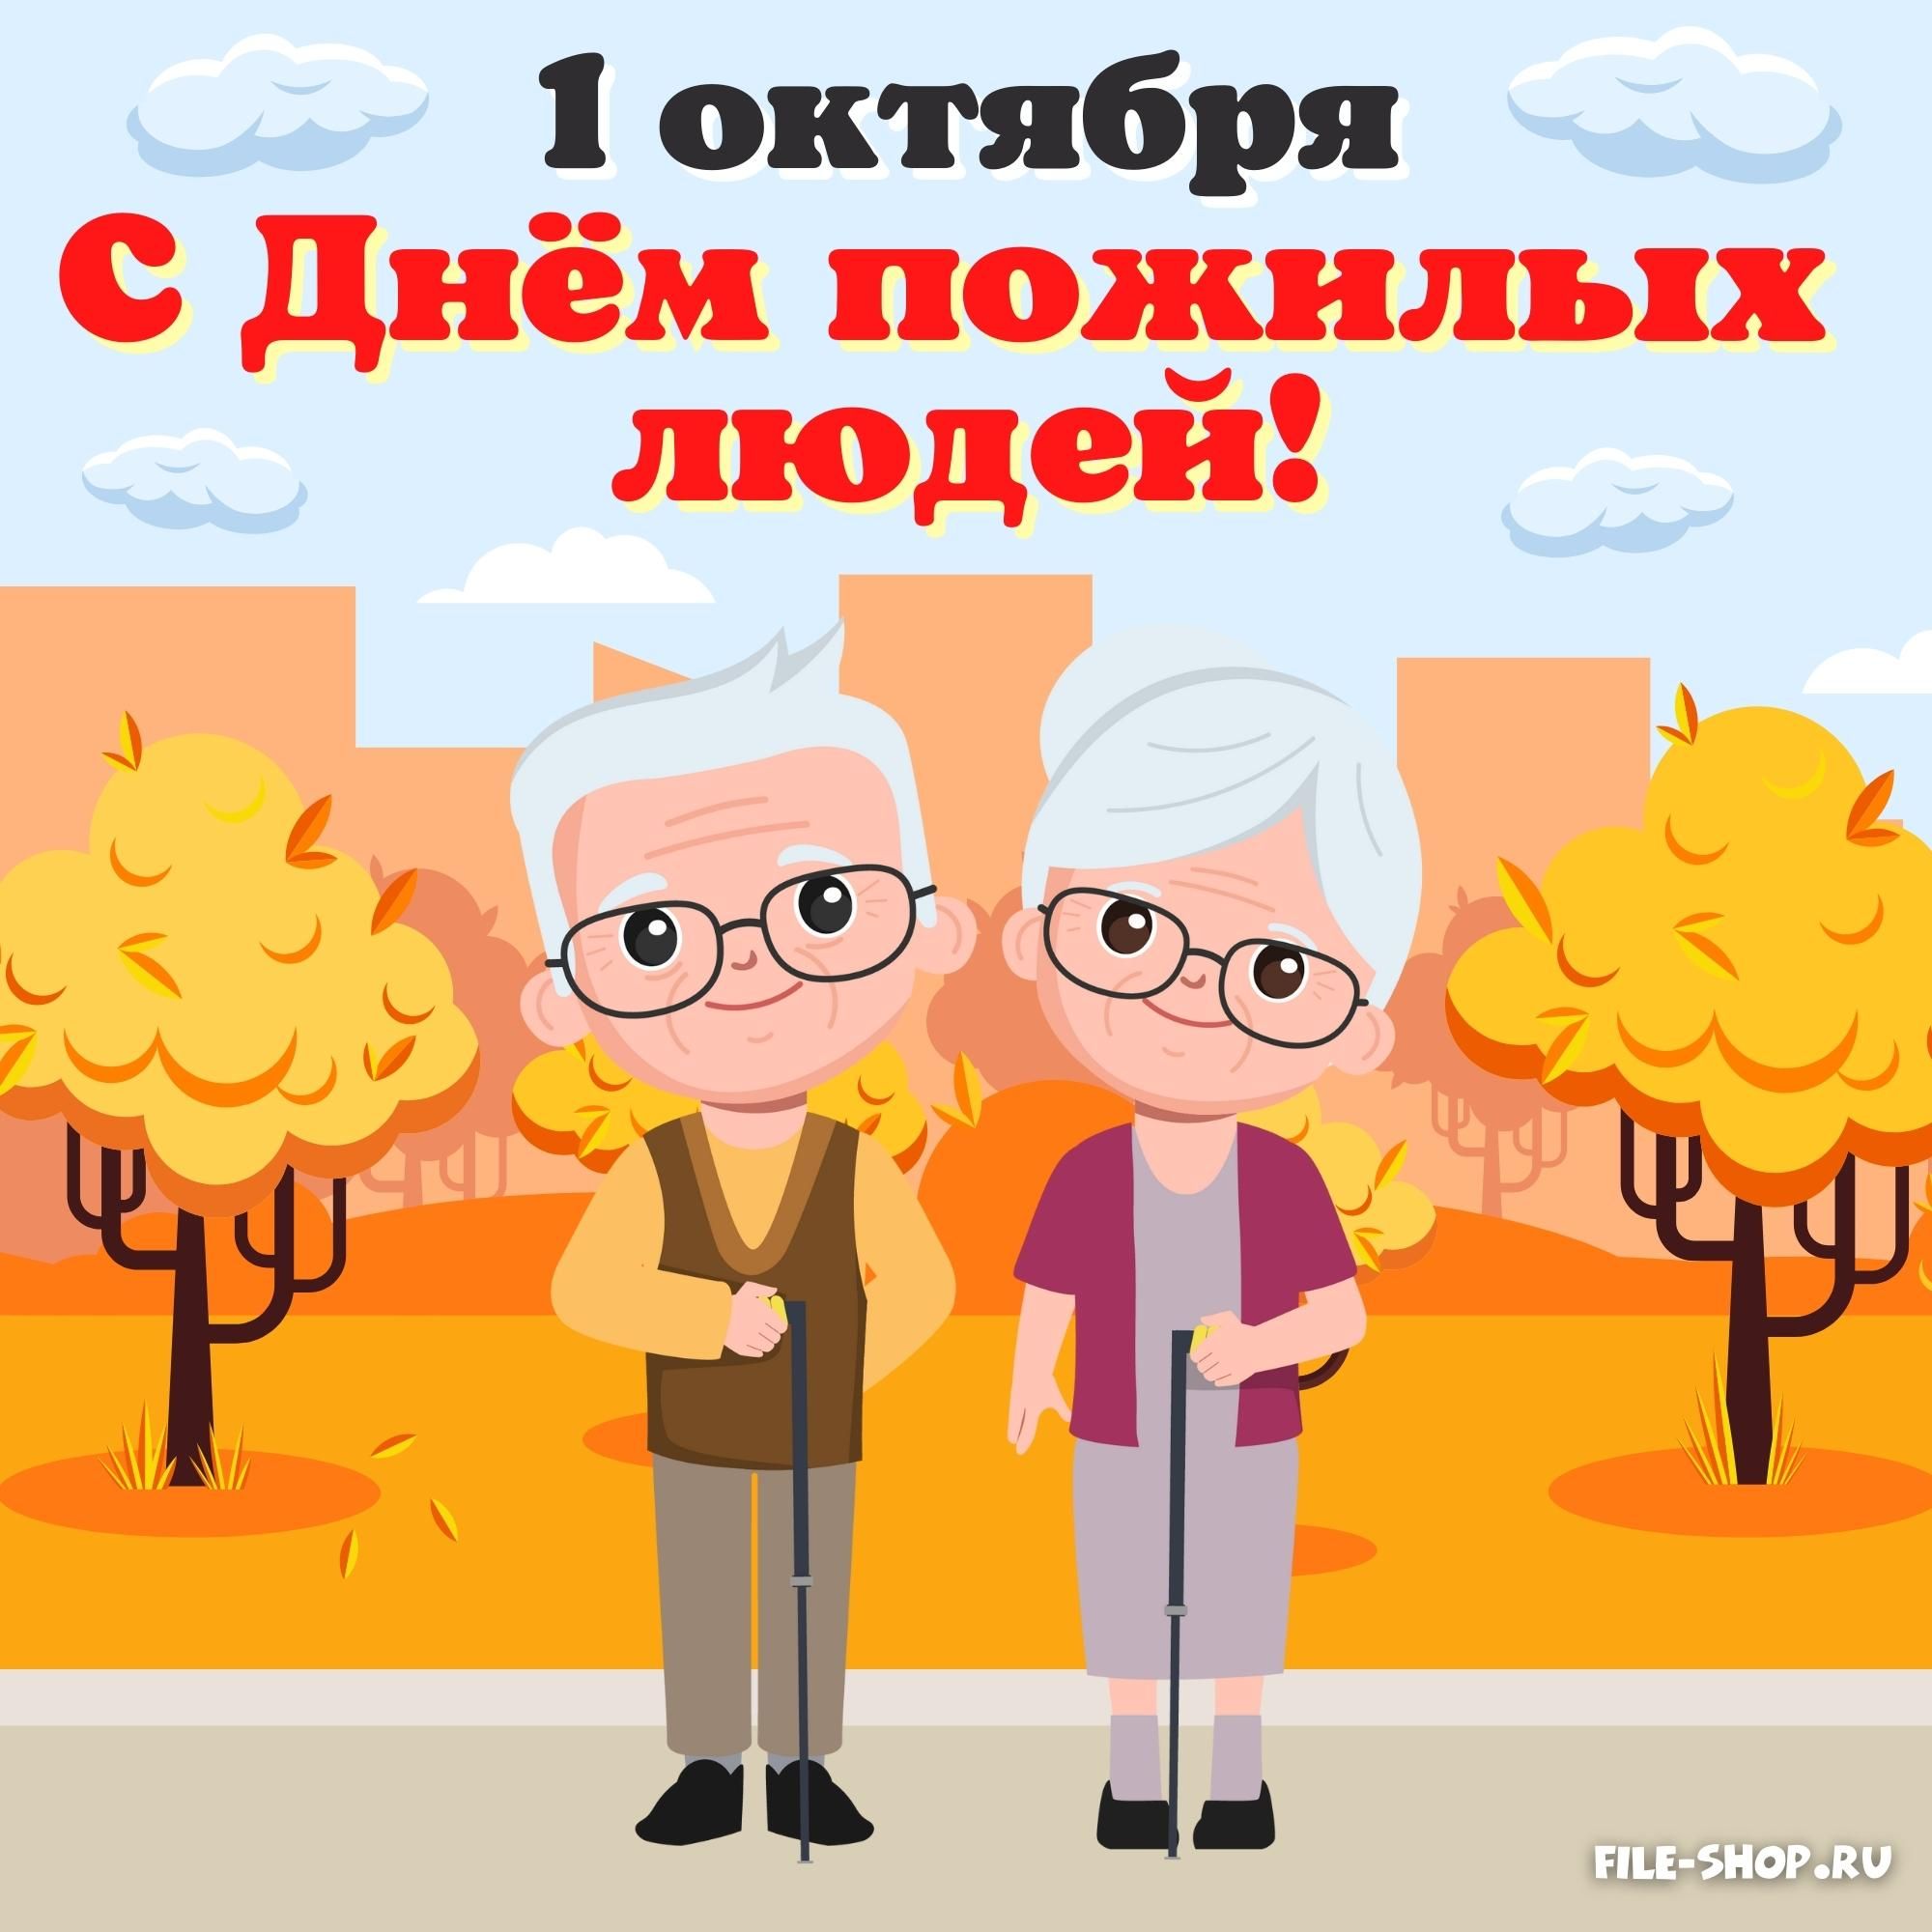 Открытка на День пожилых людей file shop.ru 9 1